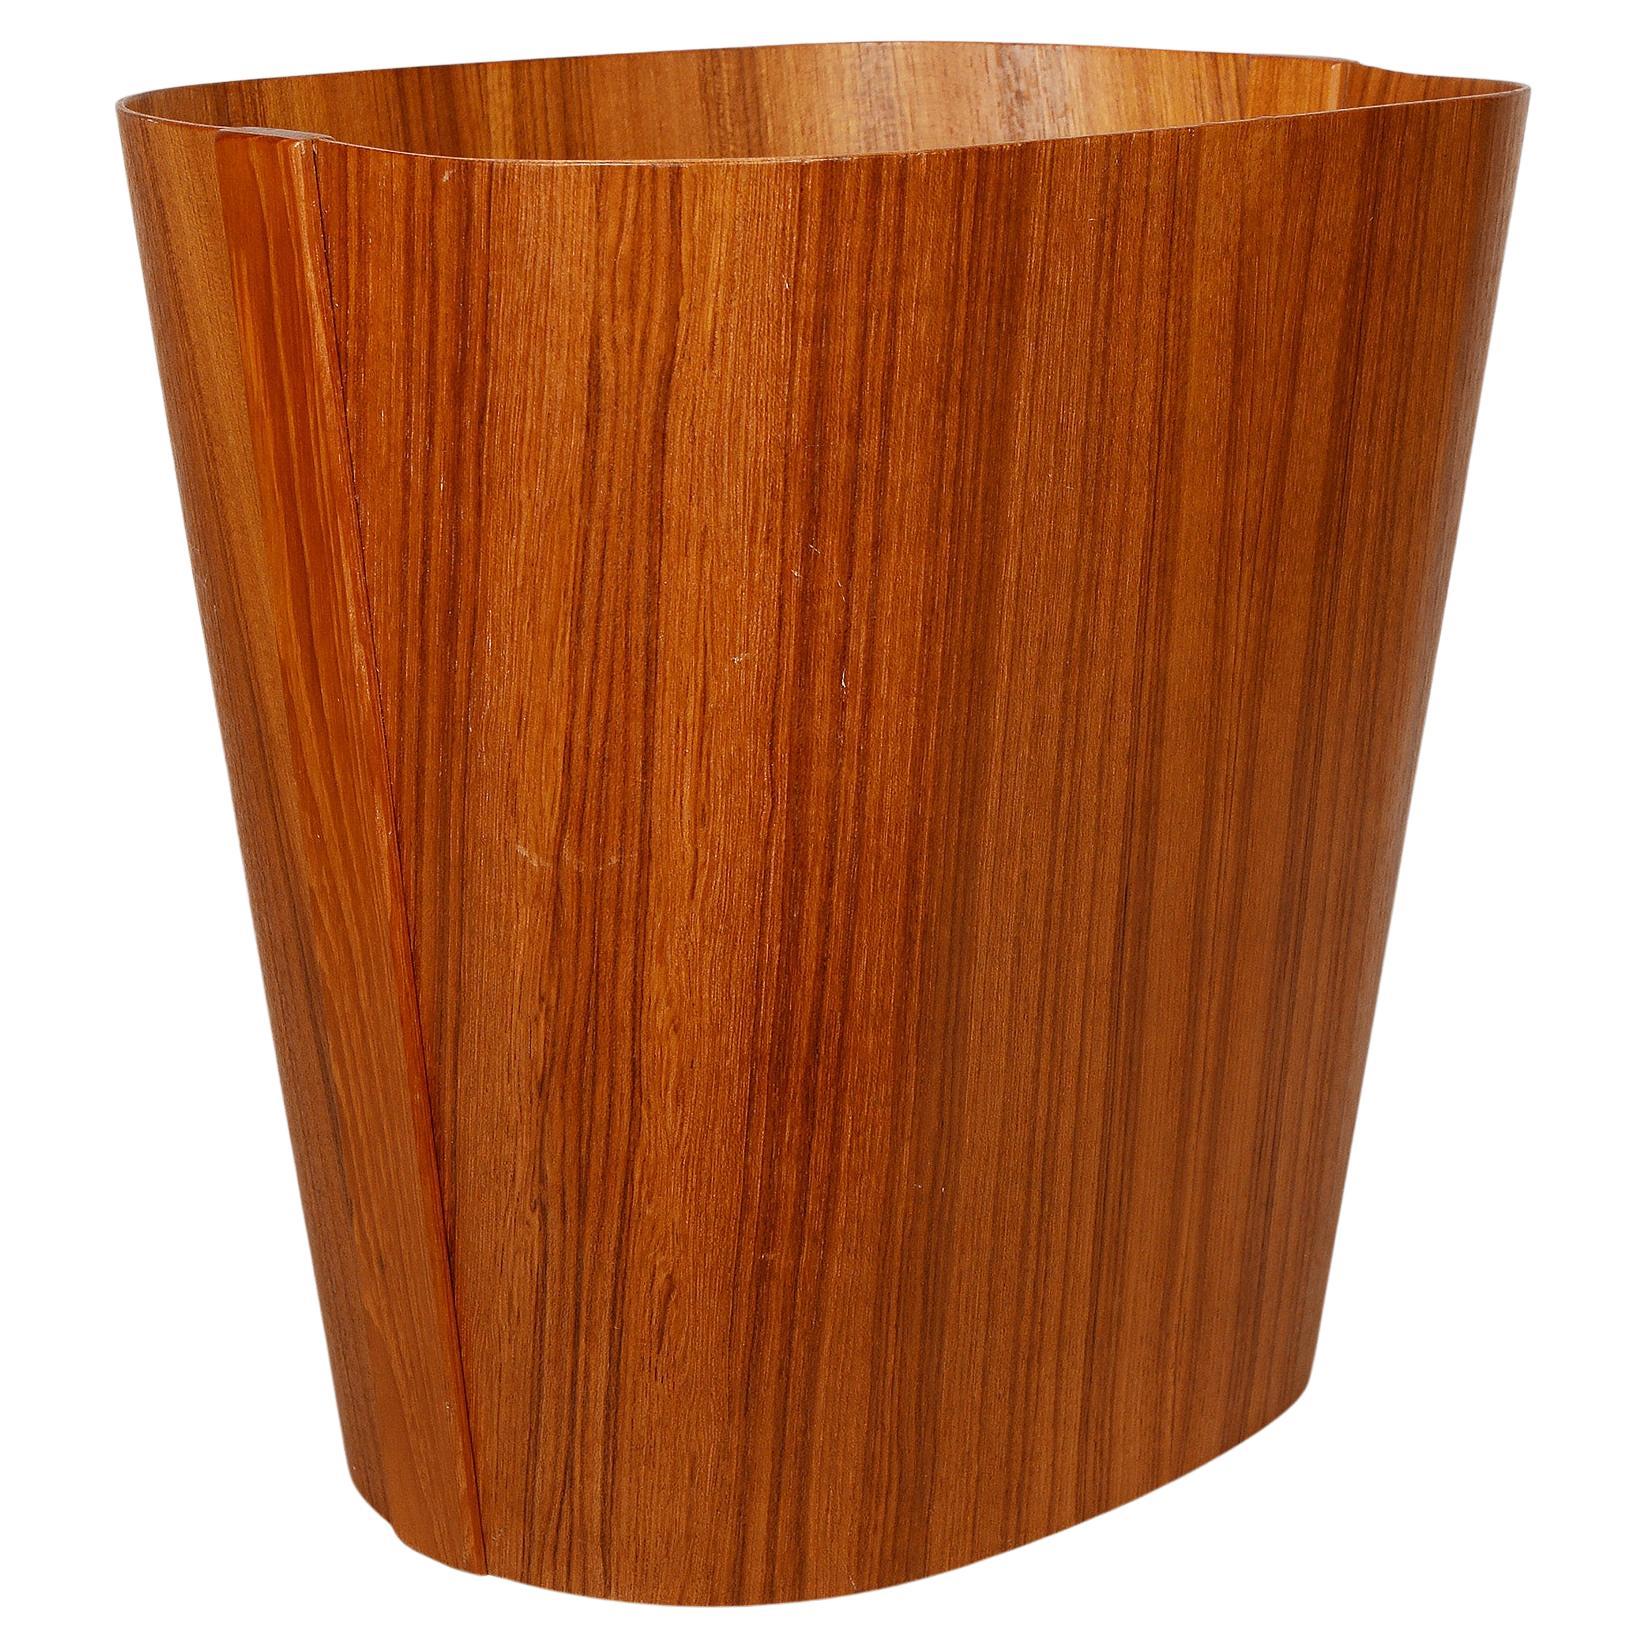 Danish Modern Bent Plywood Teak Waste Basket by Beni Mobler